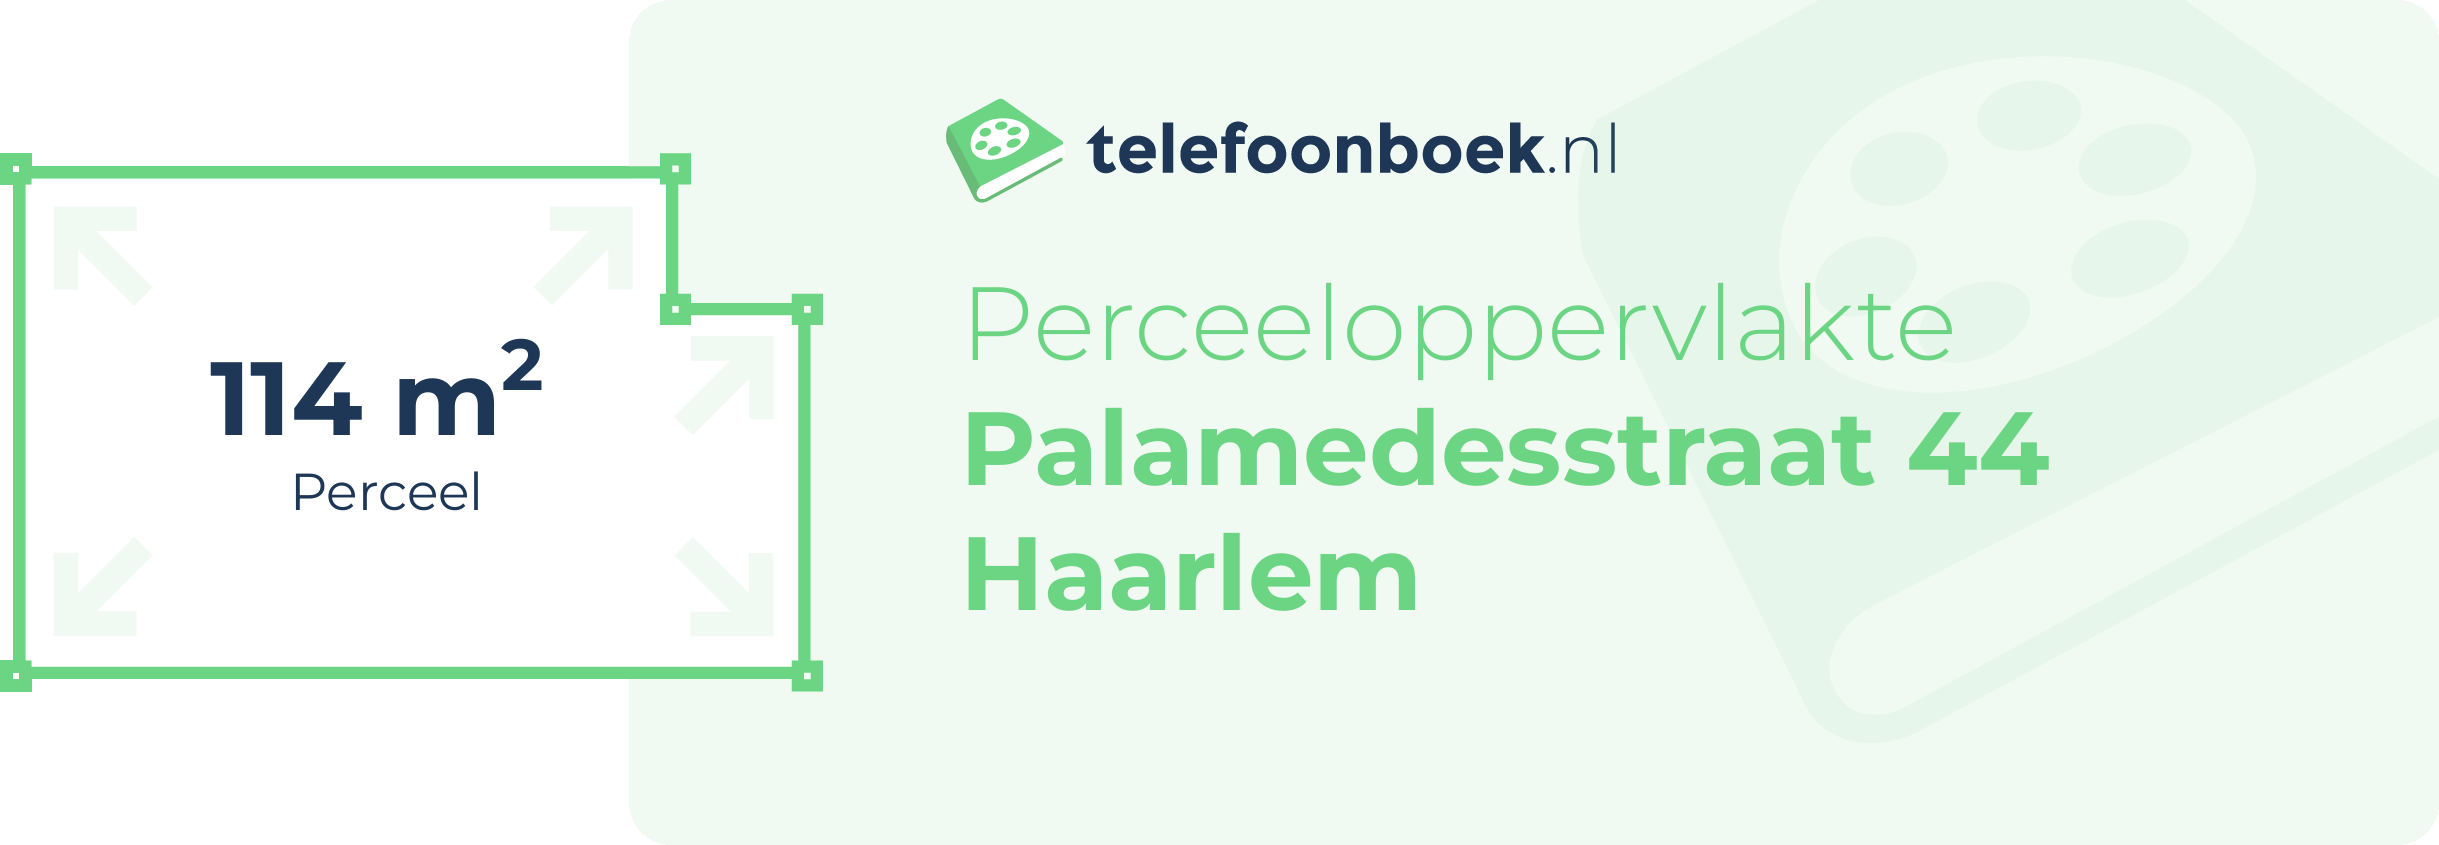 Perceeloppervlakte Palamedesstraat 44 Haarlem